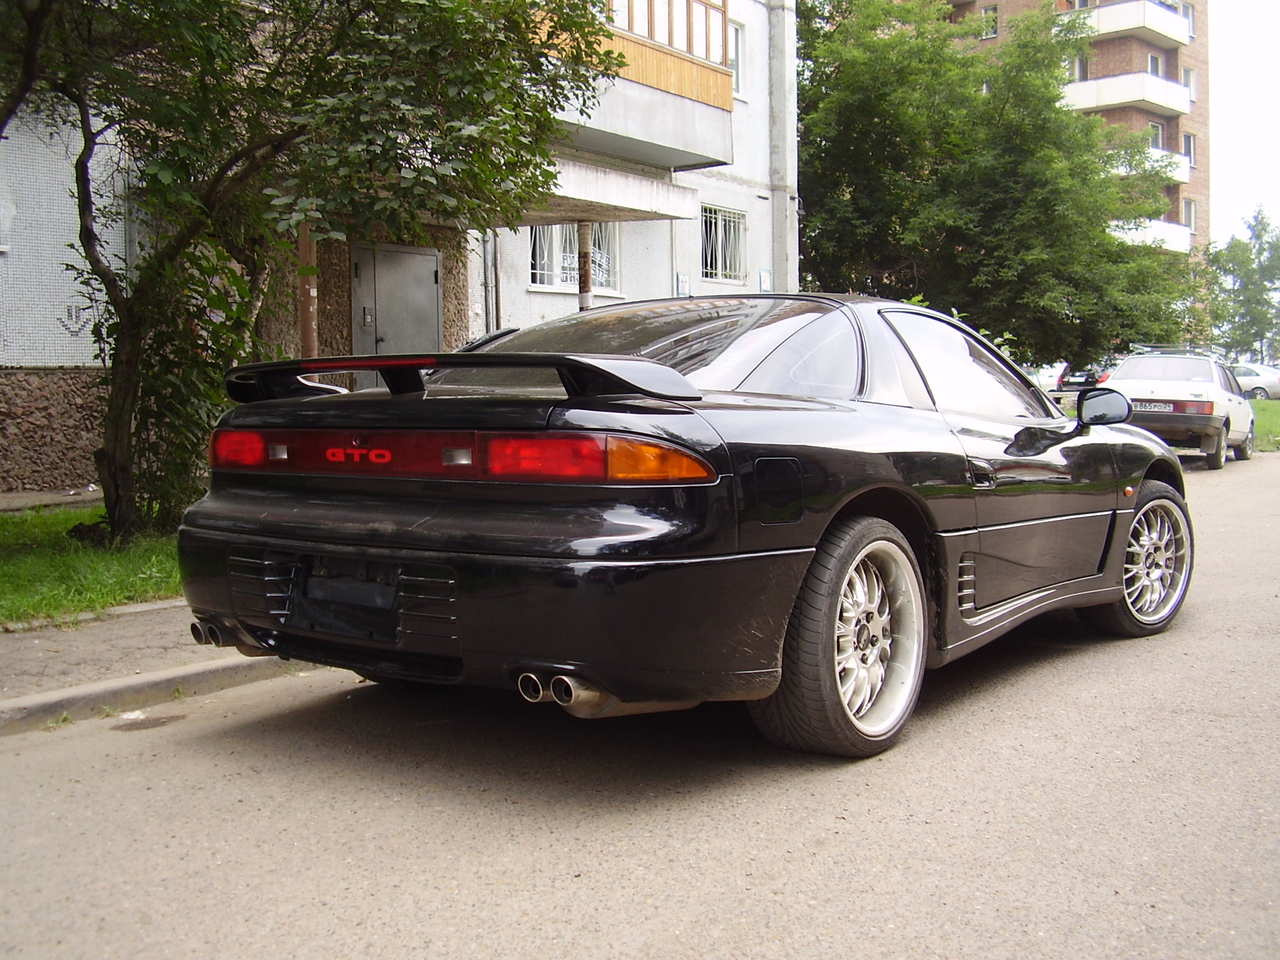 Mitsubishi 1994. Митсубиси GTO 1994. Митсубиси ГТО 1994. Митсубиси GTO кабриолет 1994. Mitsubishi GTO 3.0 at, 1994.